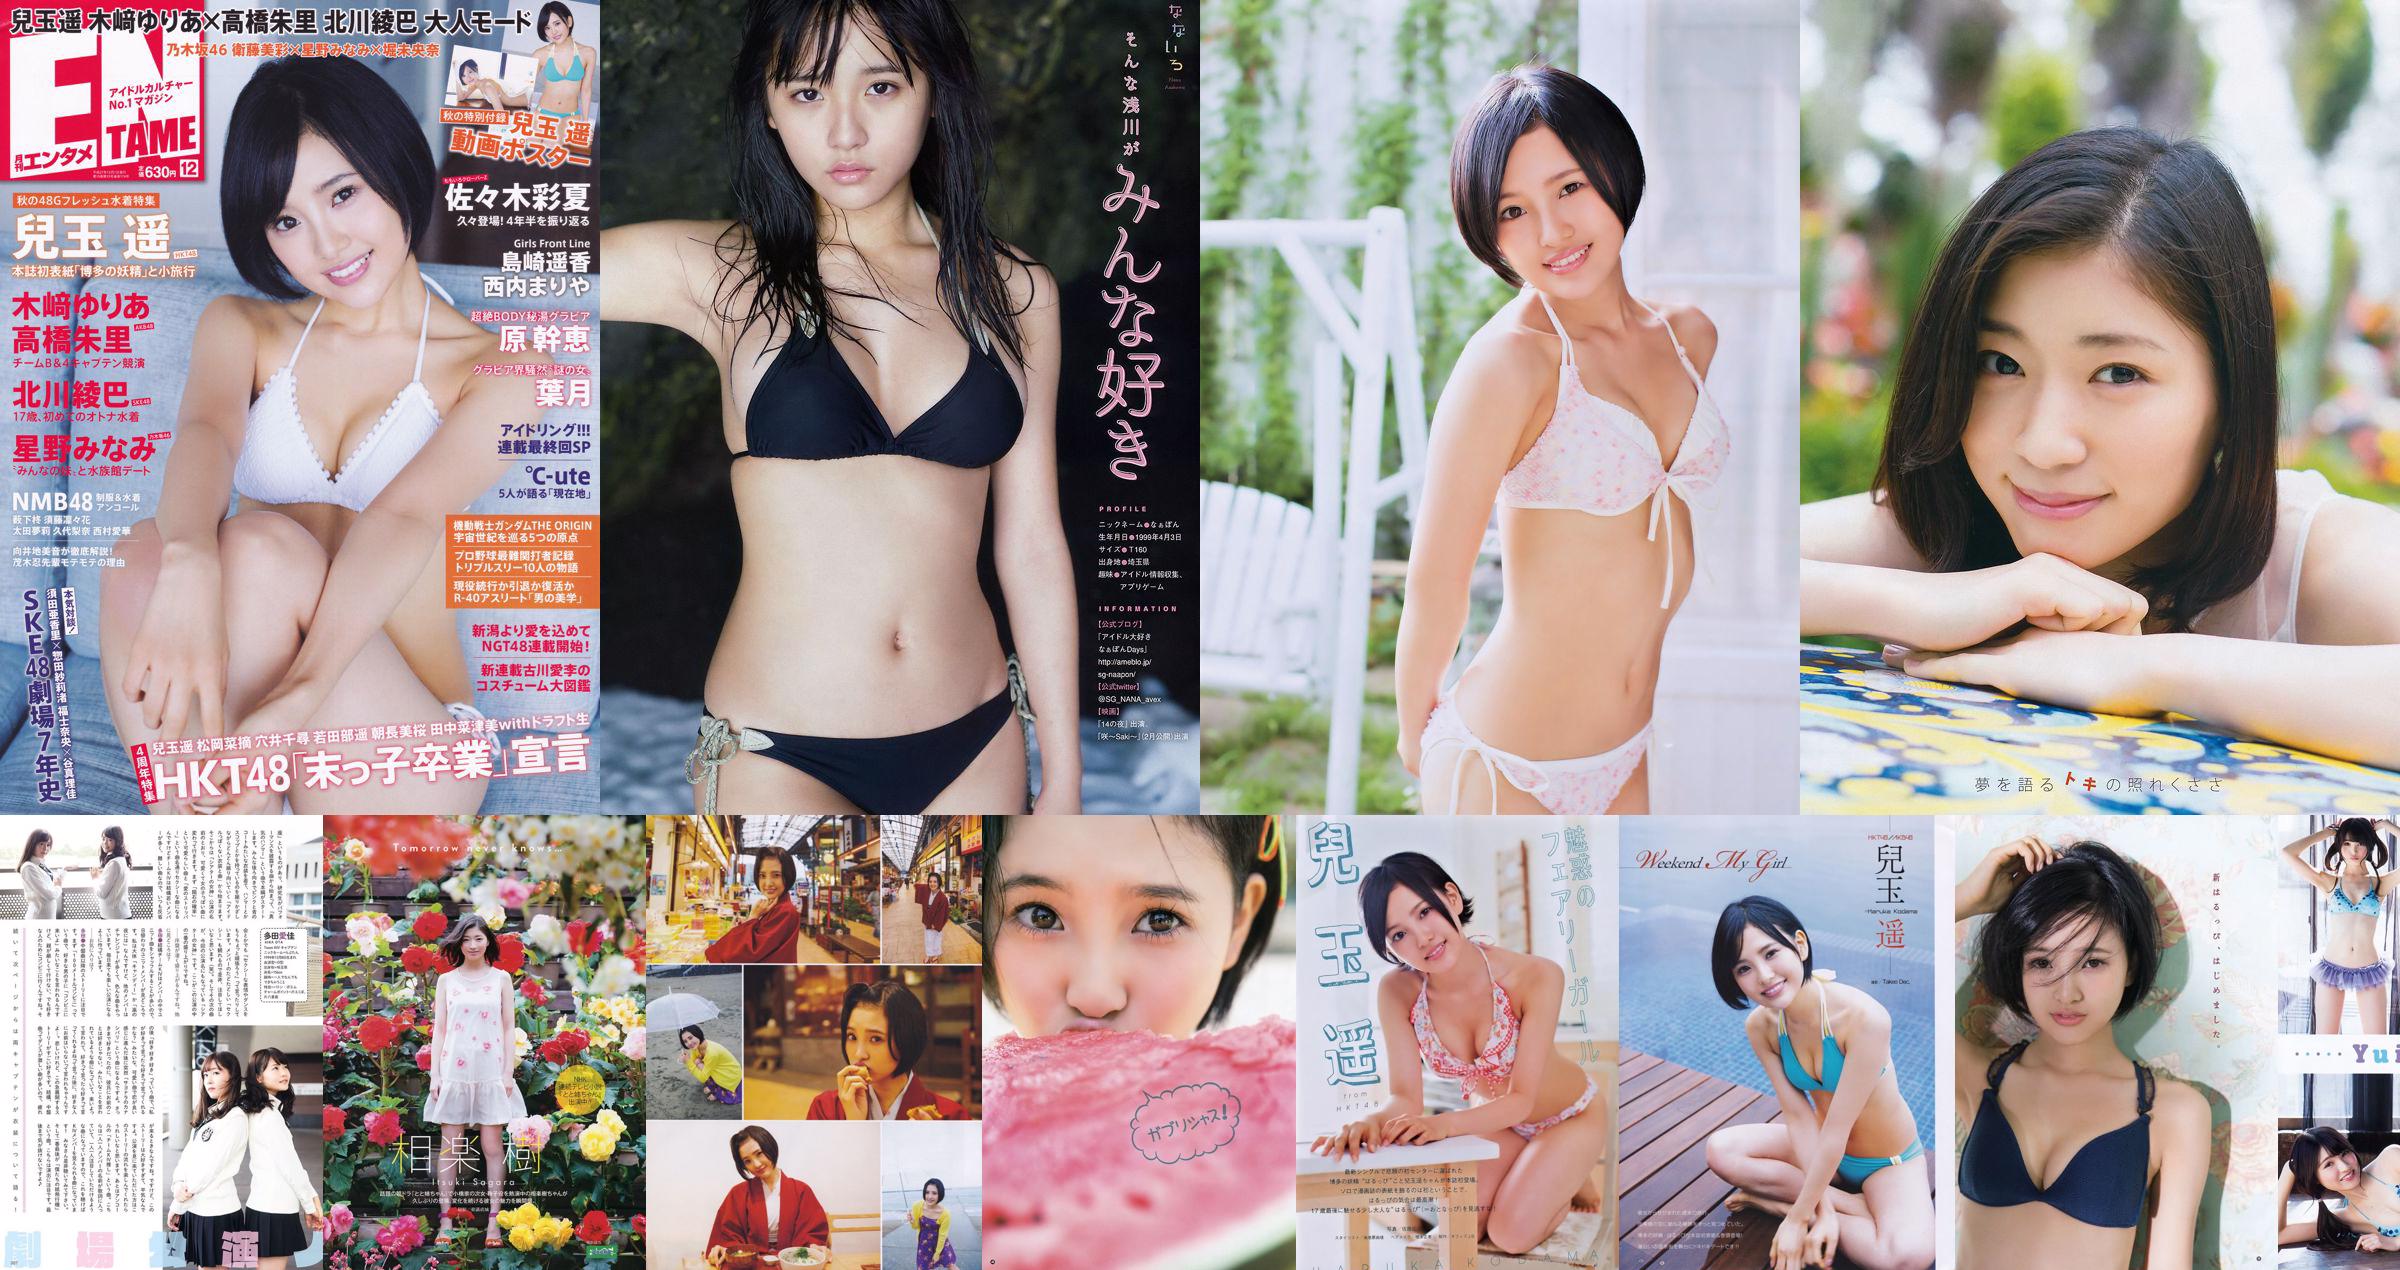 [Young Gangan] Haruka Kodama Itsuki Sagara 2016 No.11 Photo Magazine No.dfbe4c Página 4